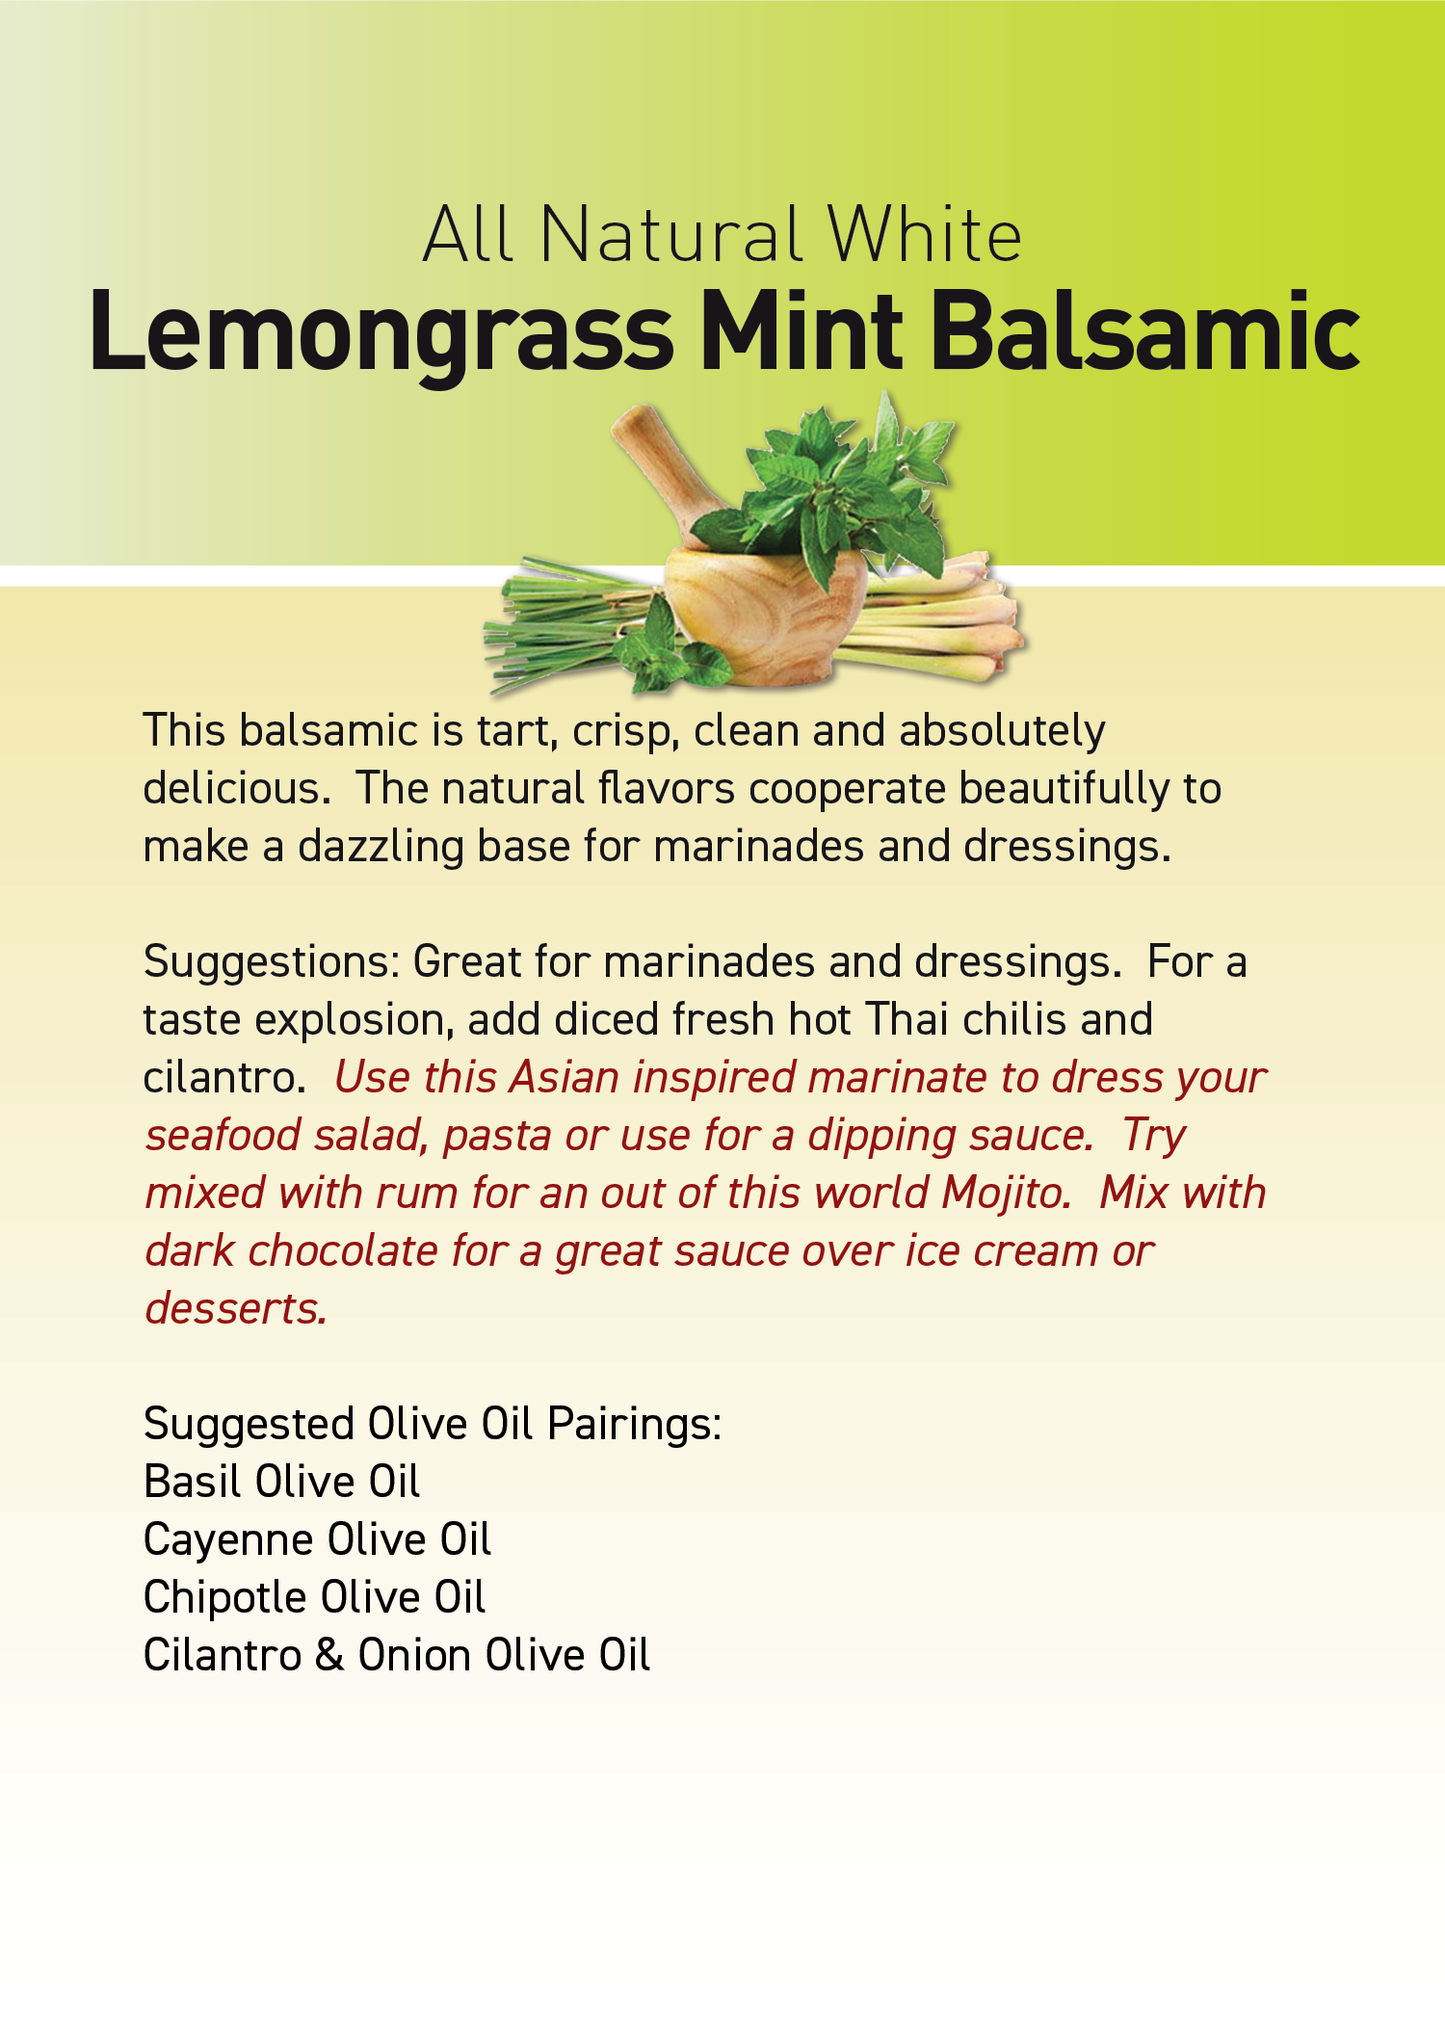 Lemongrass Mint Balsamic